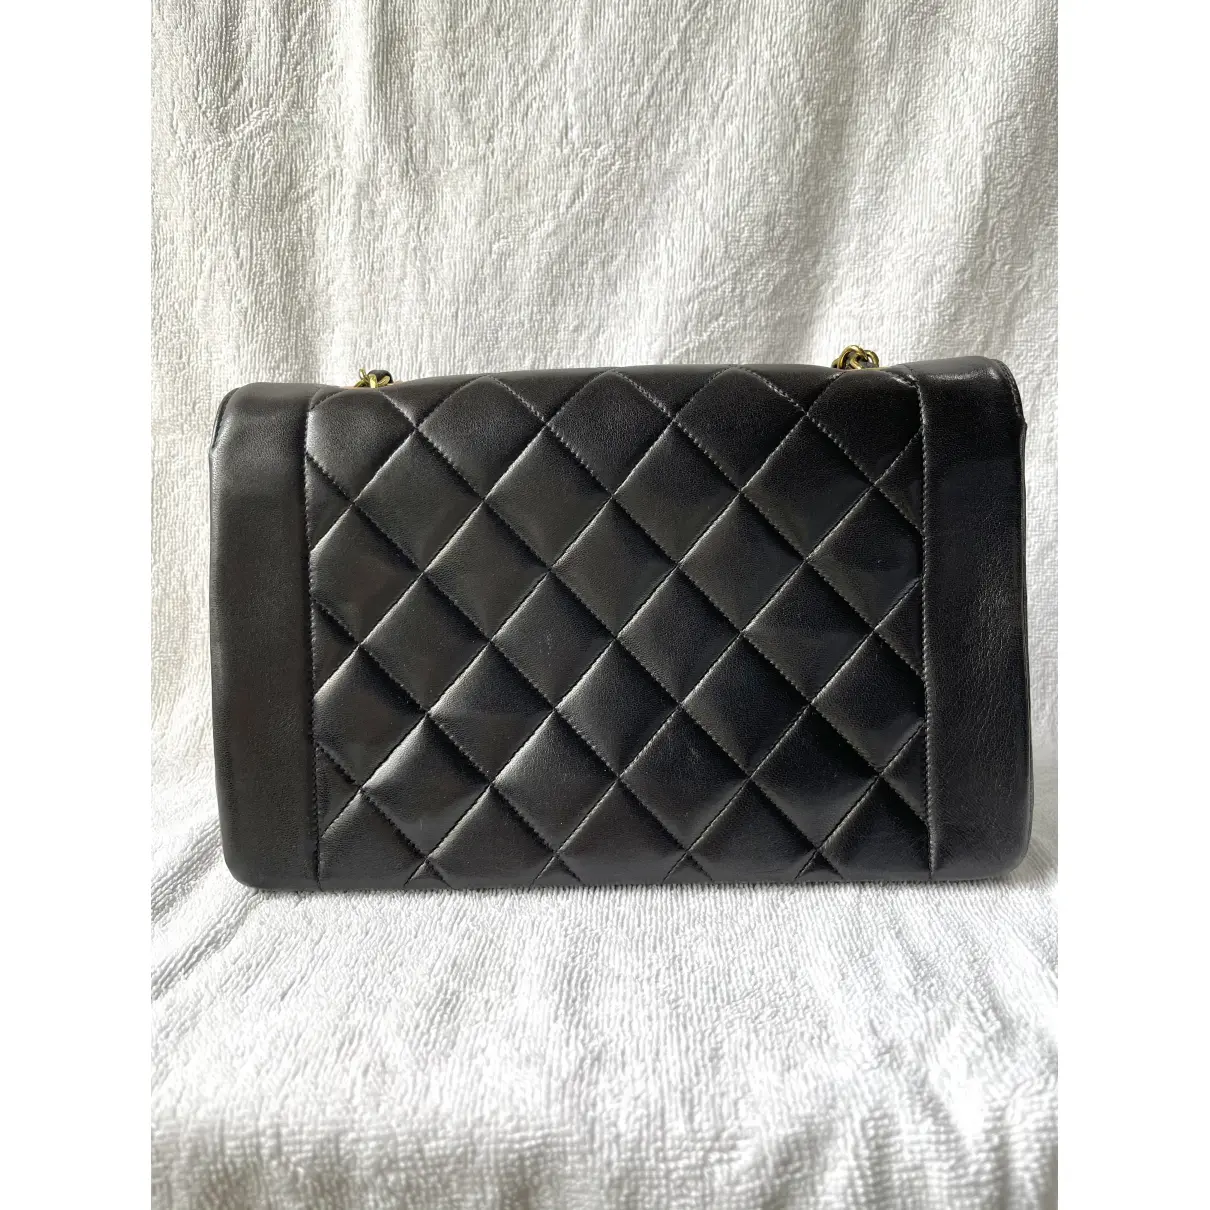 Buy Chanel Diana leather bag online - Vintage